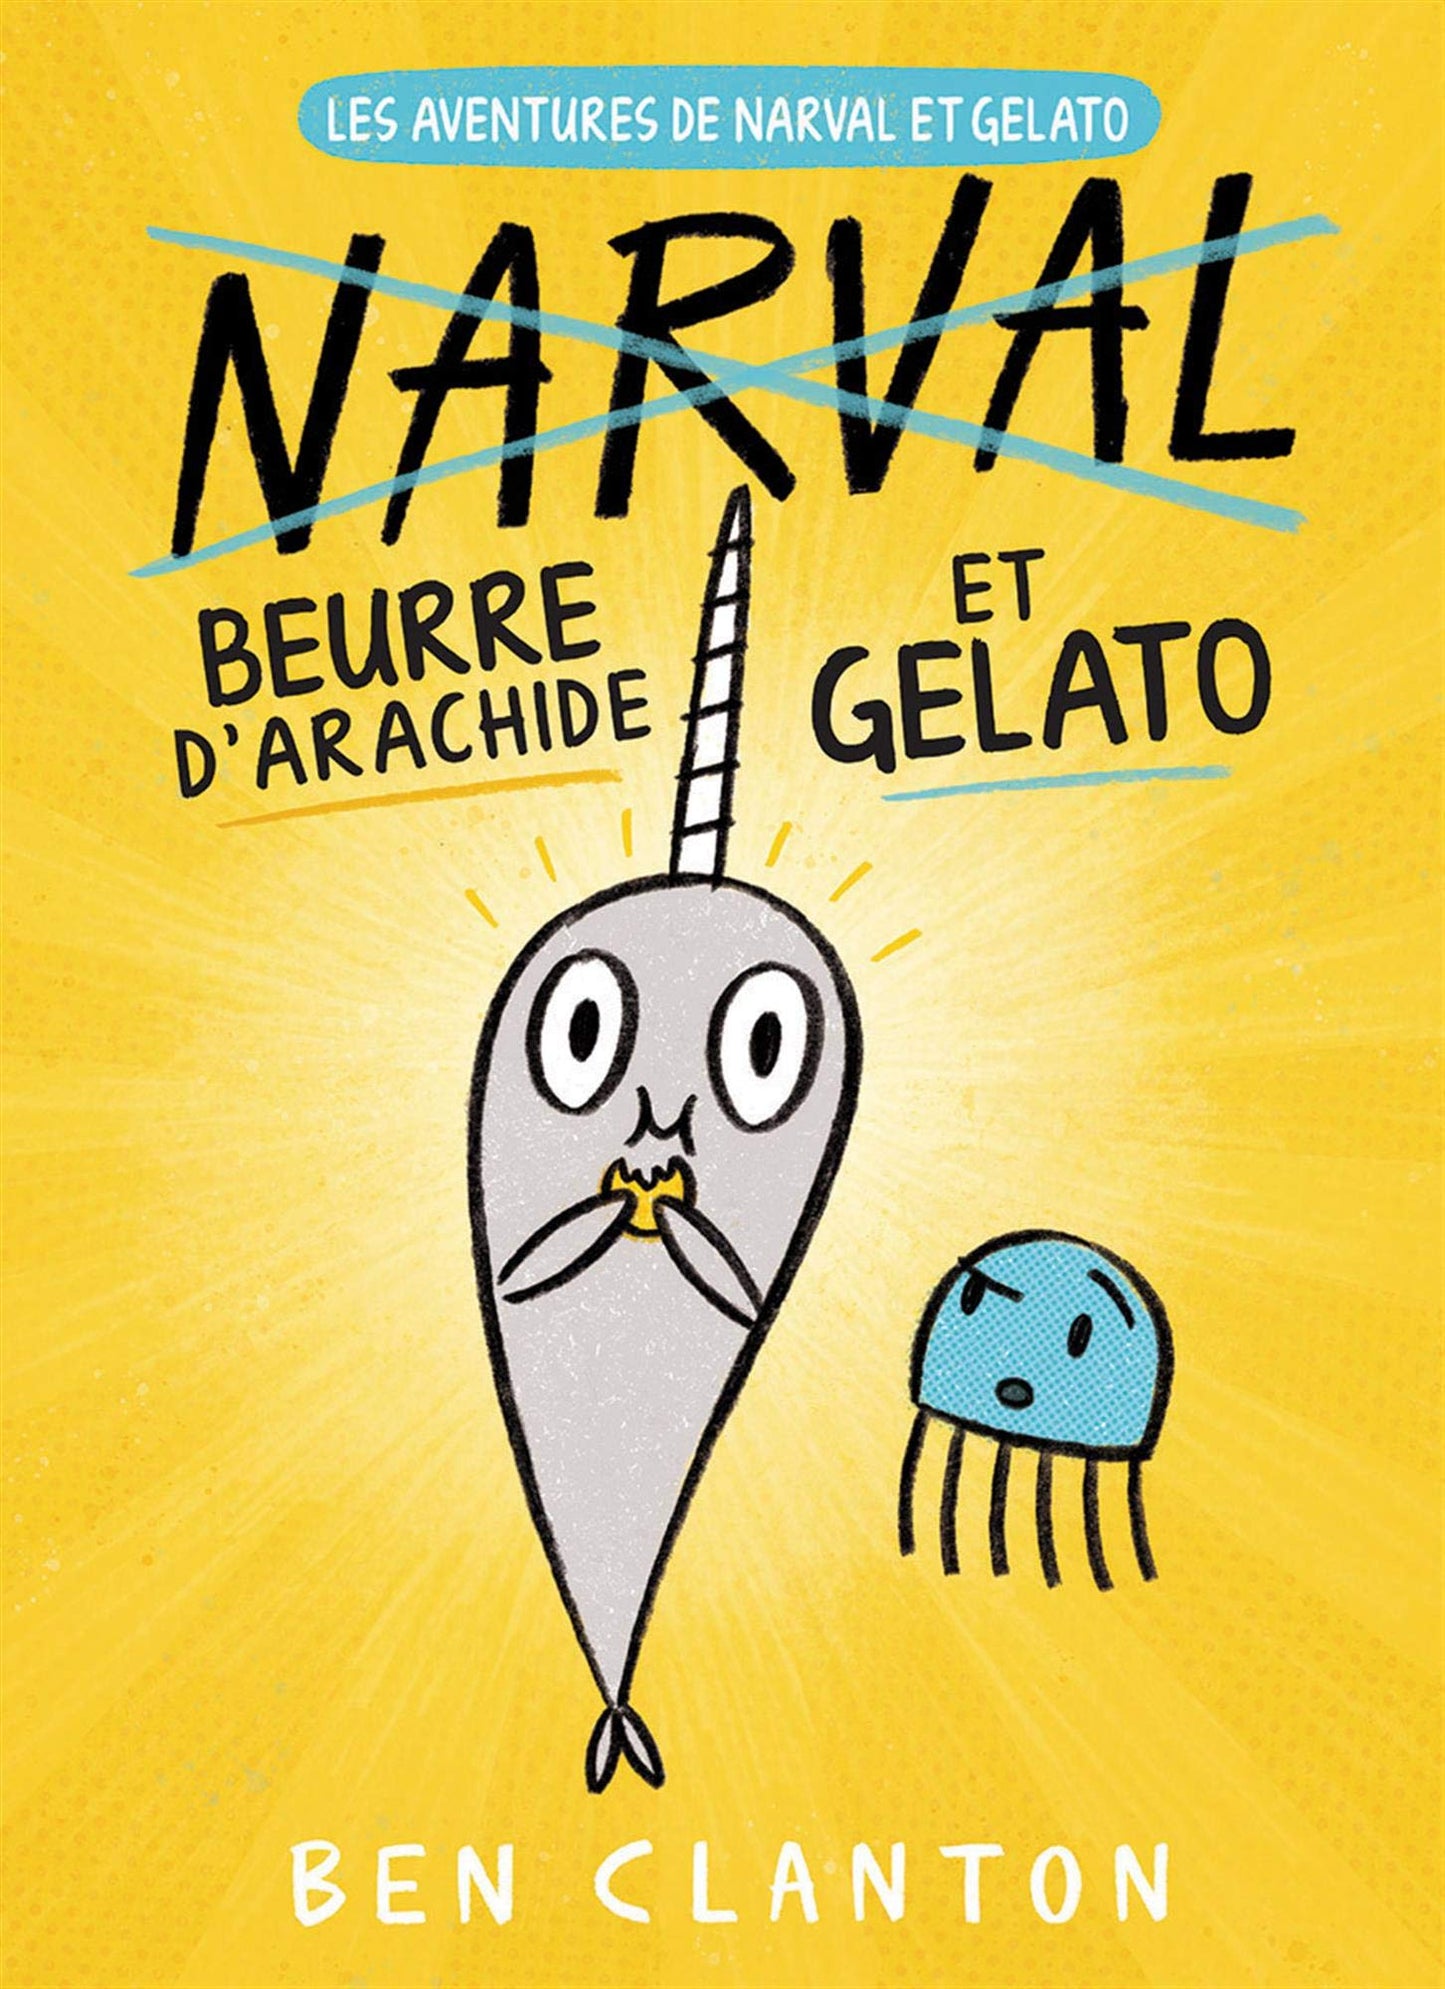 Les aventures de Narval et Gelato No. 3: Beurre d'arachide et Gelato